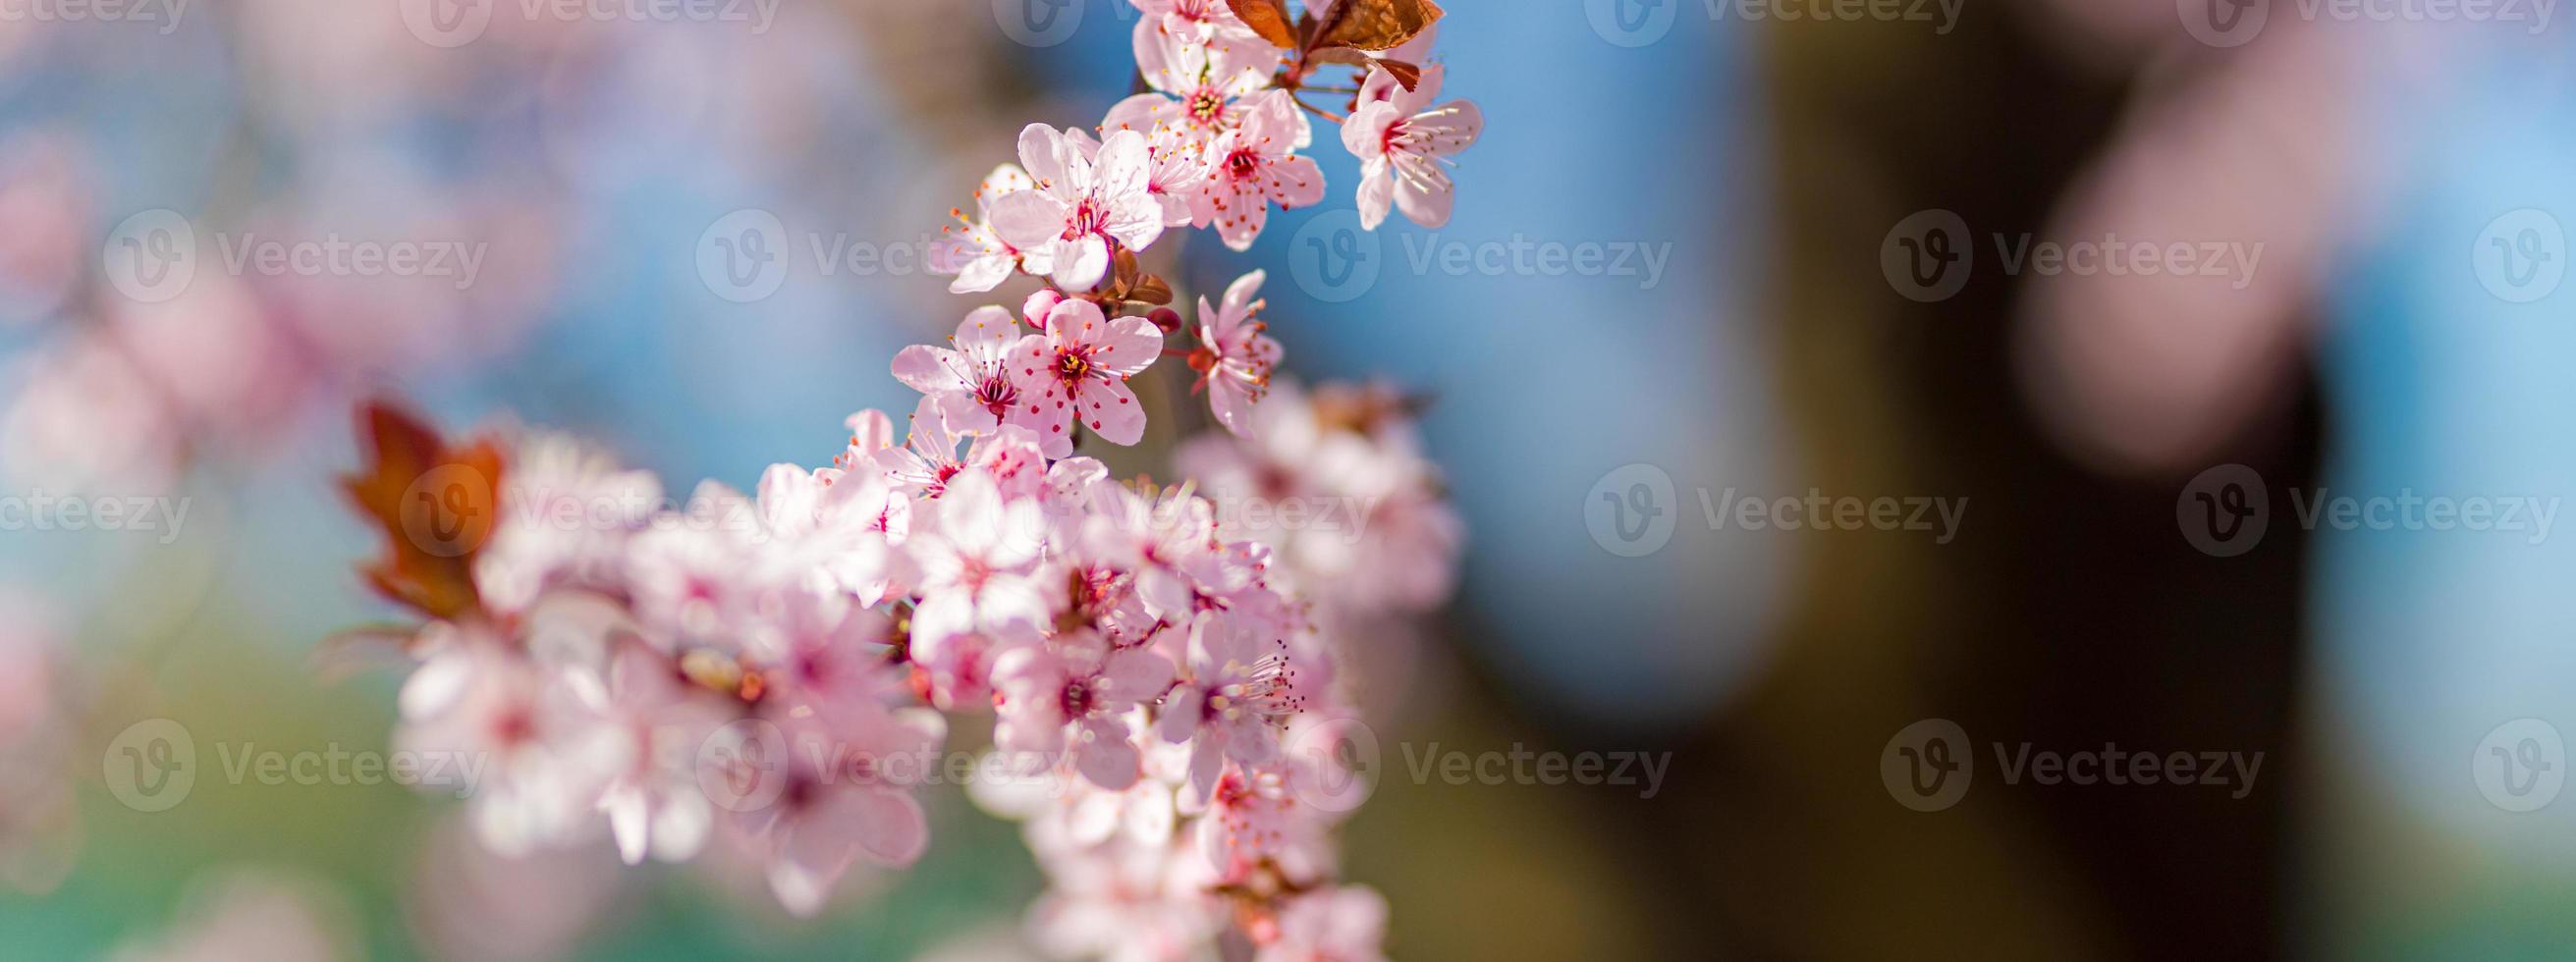 fantastisk natur närbild, blommande körsbär på suddig bokeh bakgrund. rosa sakura blommor, fantastisk färgglad drömmande romantisk natur. älskar blommig bannerdesign foto